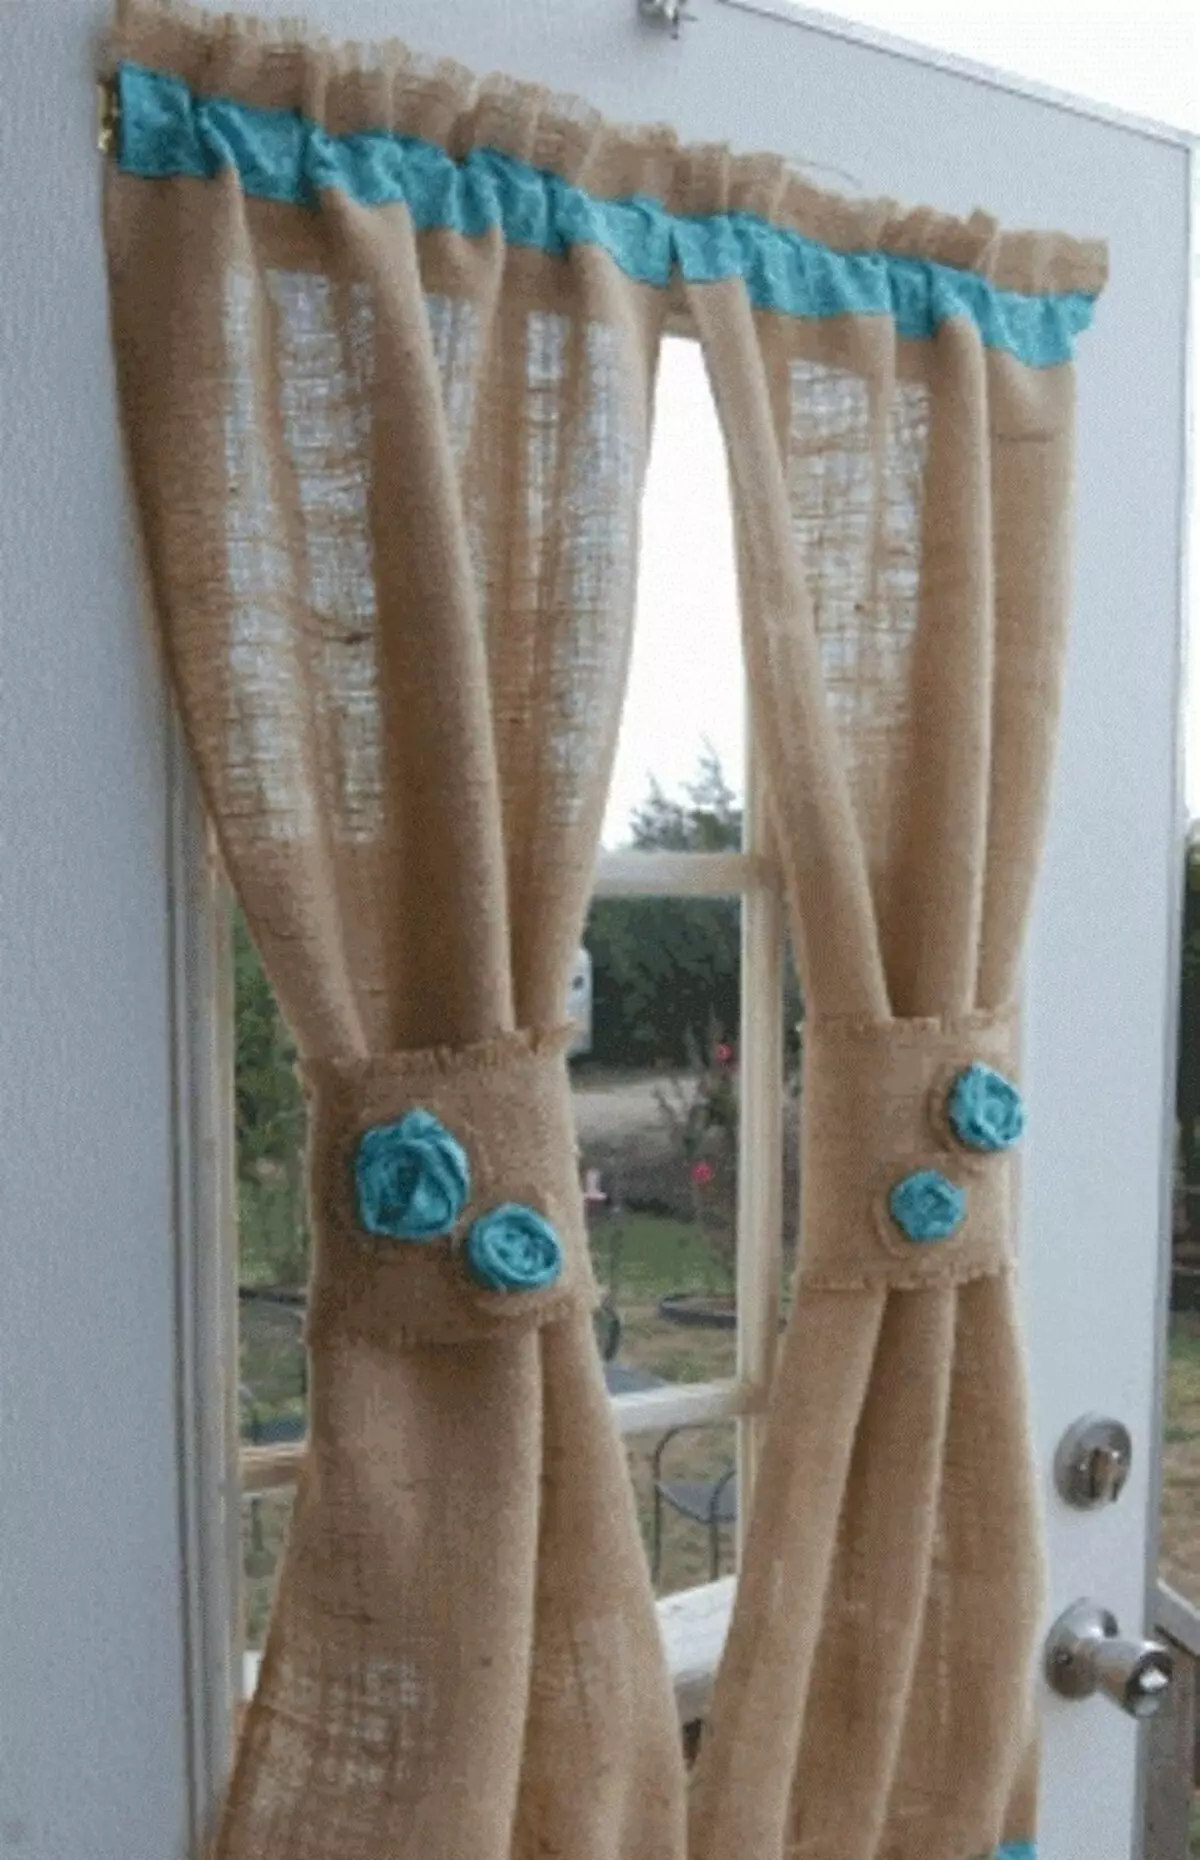 Burlap Curtains